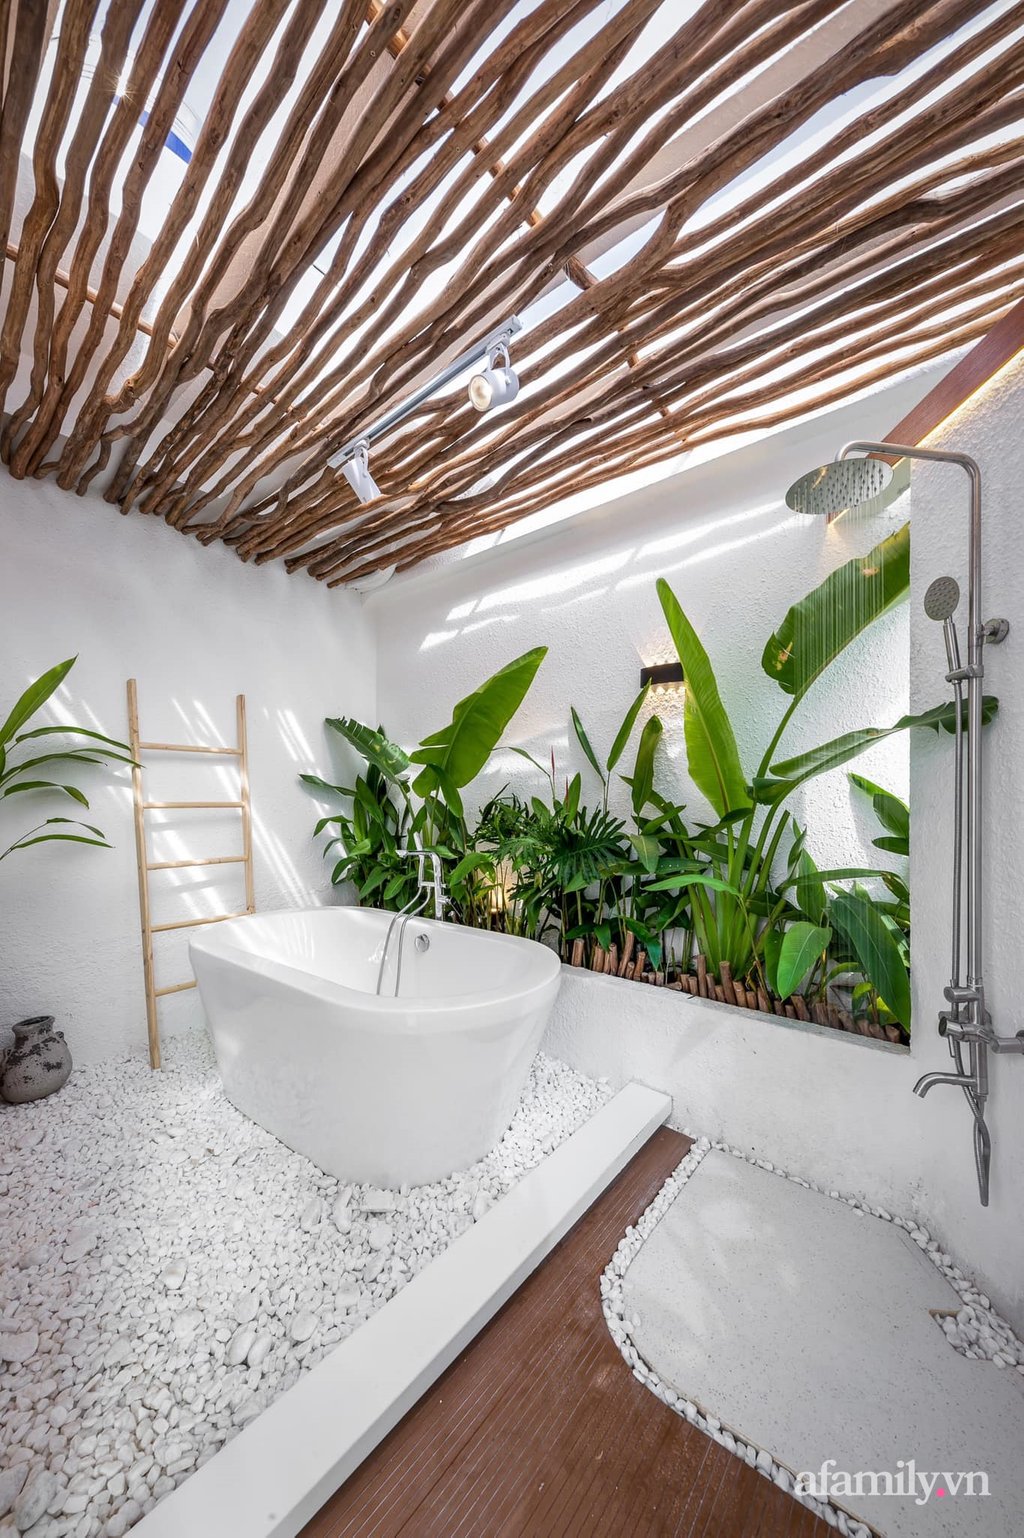 Sắc màu tươi tắn của những chất liệu gần gũi với thiên nhiên giúp phòng tắm đẹp như resort giữa lòng thành phố ầm uất bậc nhất Việt Nam.